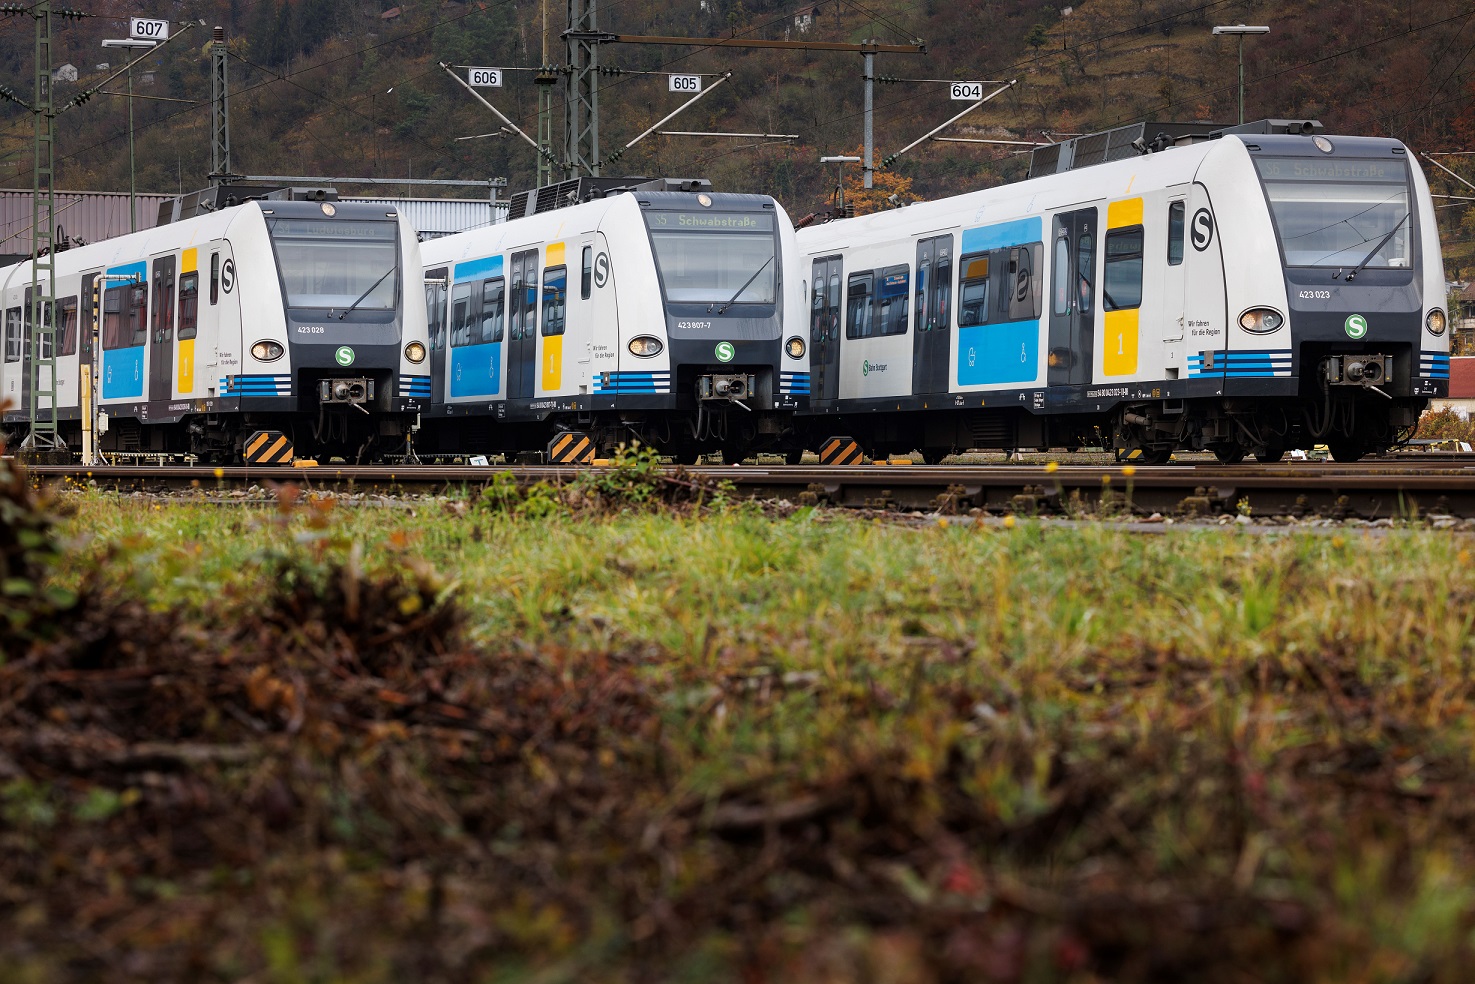 S-Bahn Stuttgart - Vehicles of S-Bahn series 423